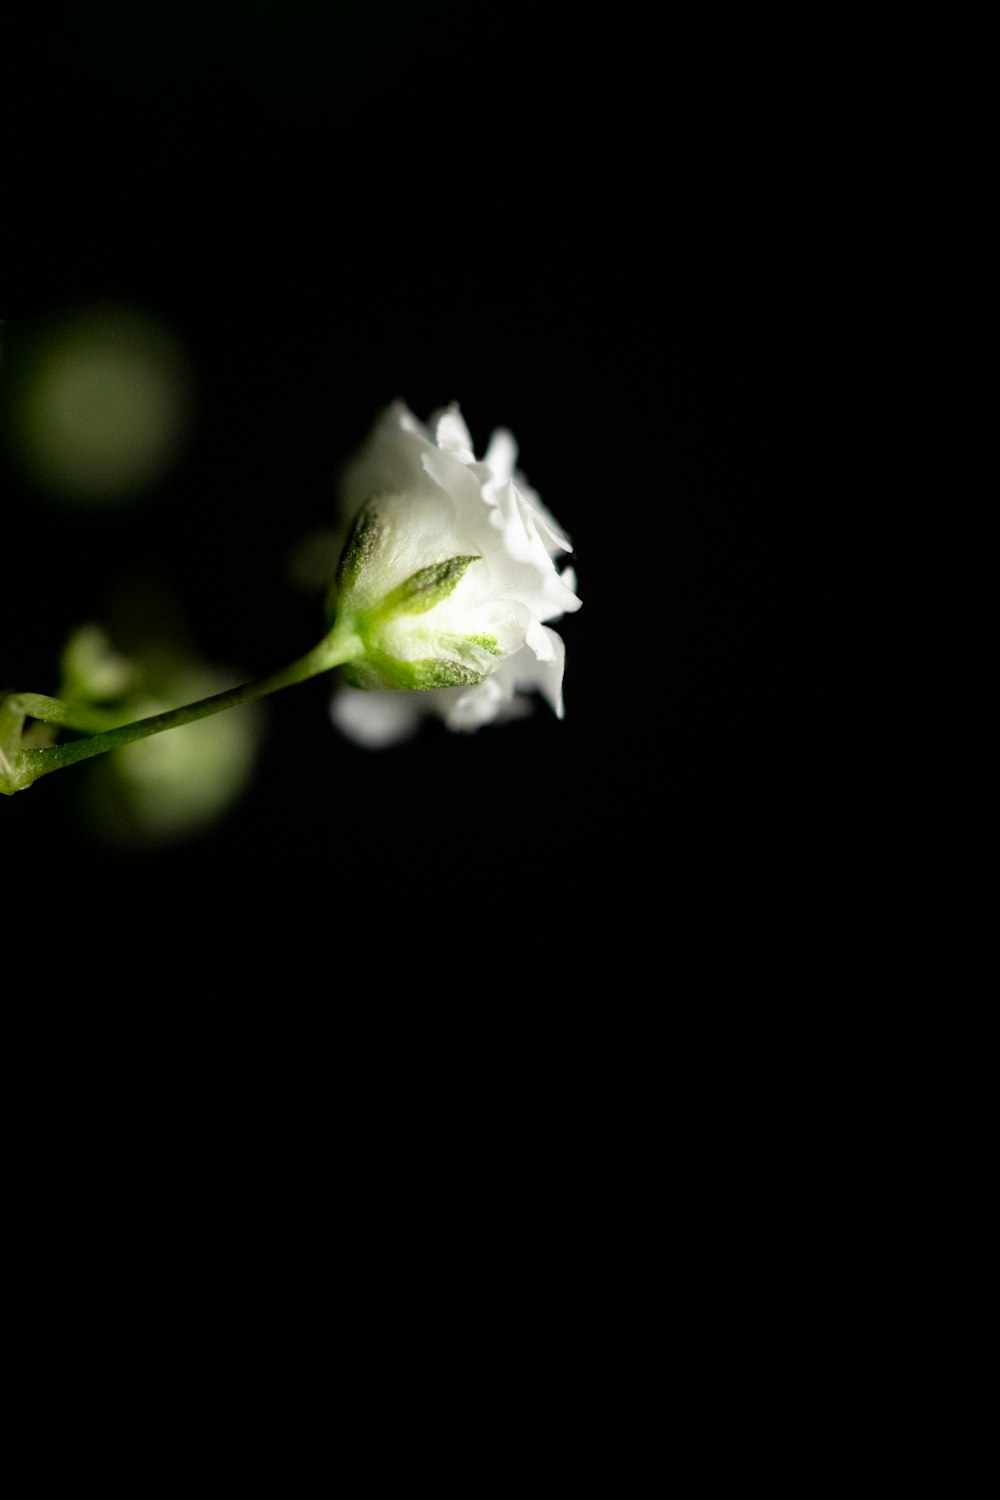 white petaled flower on bloom during daytime